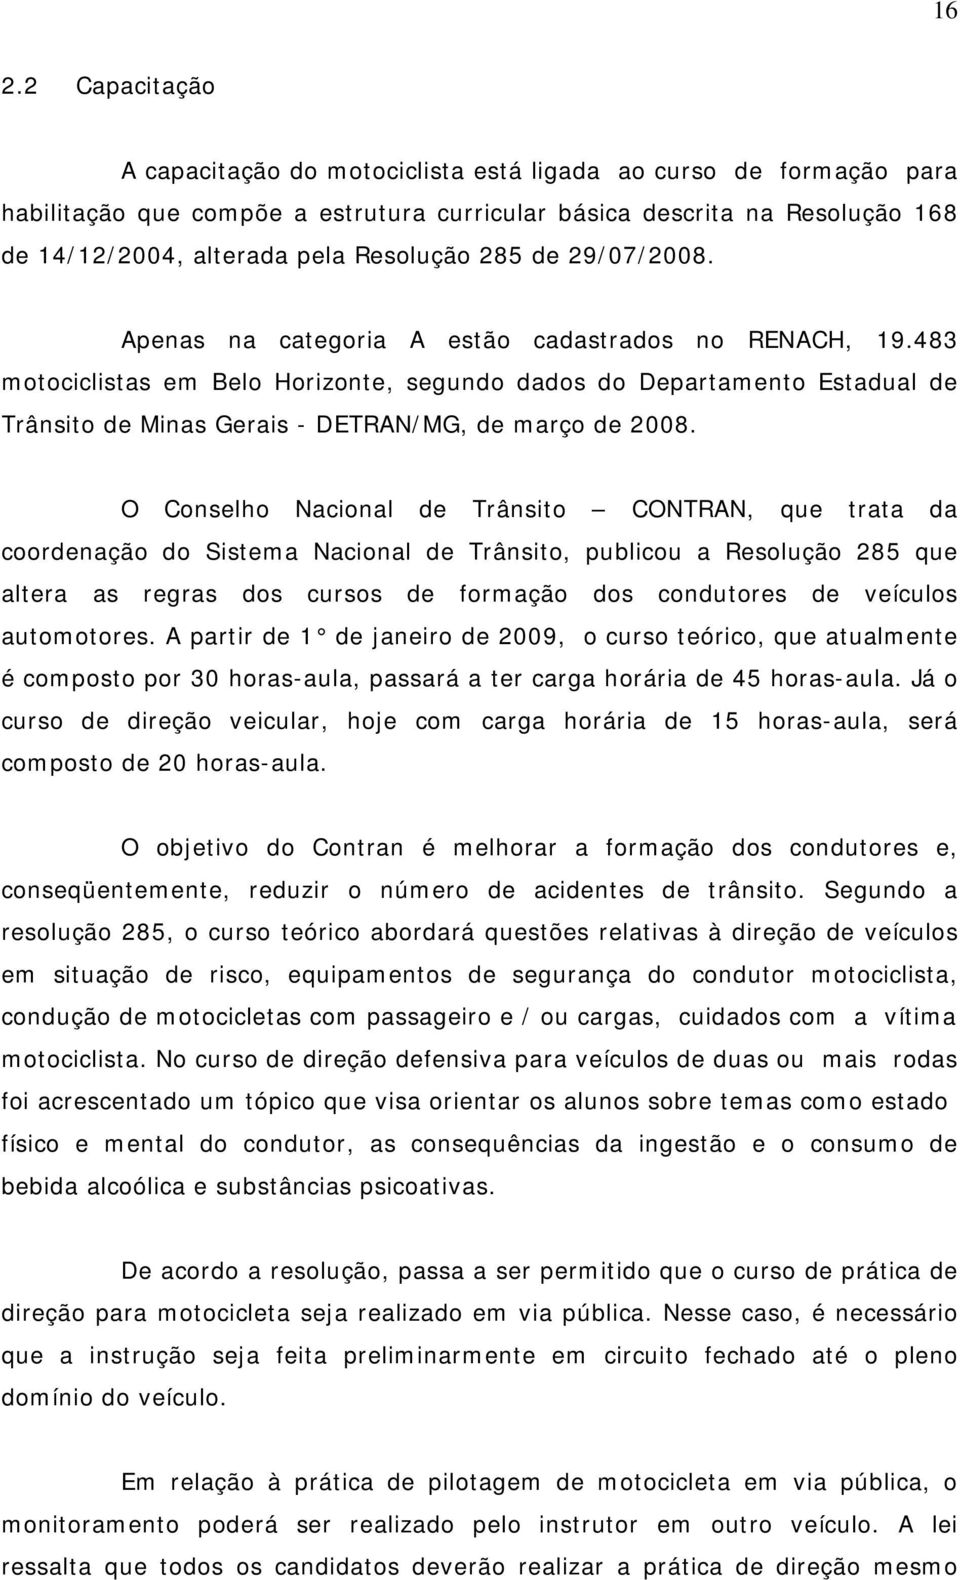 483 motociclistas em Belo Horizonte, segundo dados do Departamento Estadual de Trânsito de Minas Gerais - DETRAN/MG, de março de 2008.